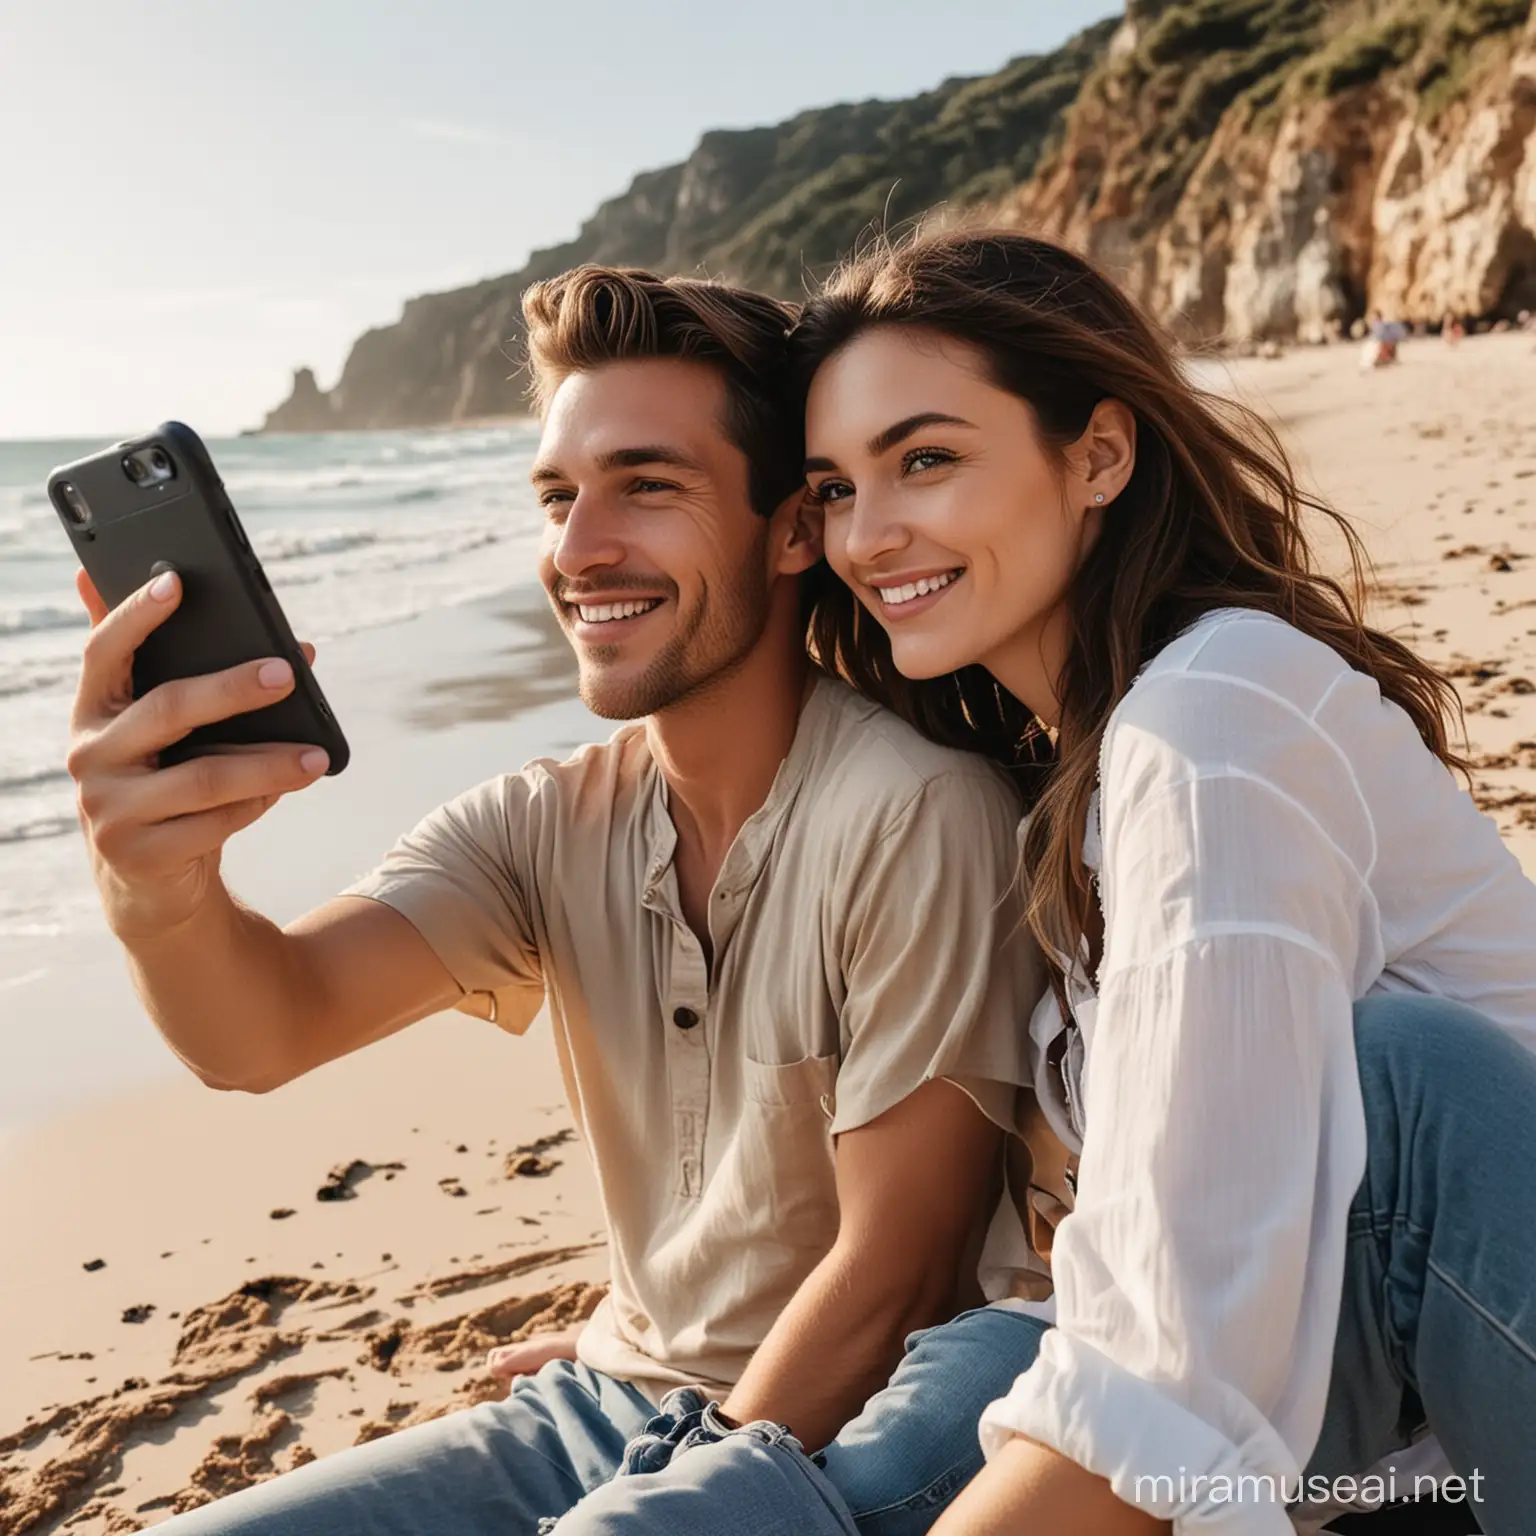 Romantic Beach Selfie Couple Captures Love by the Shore